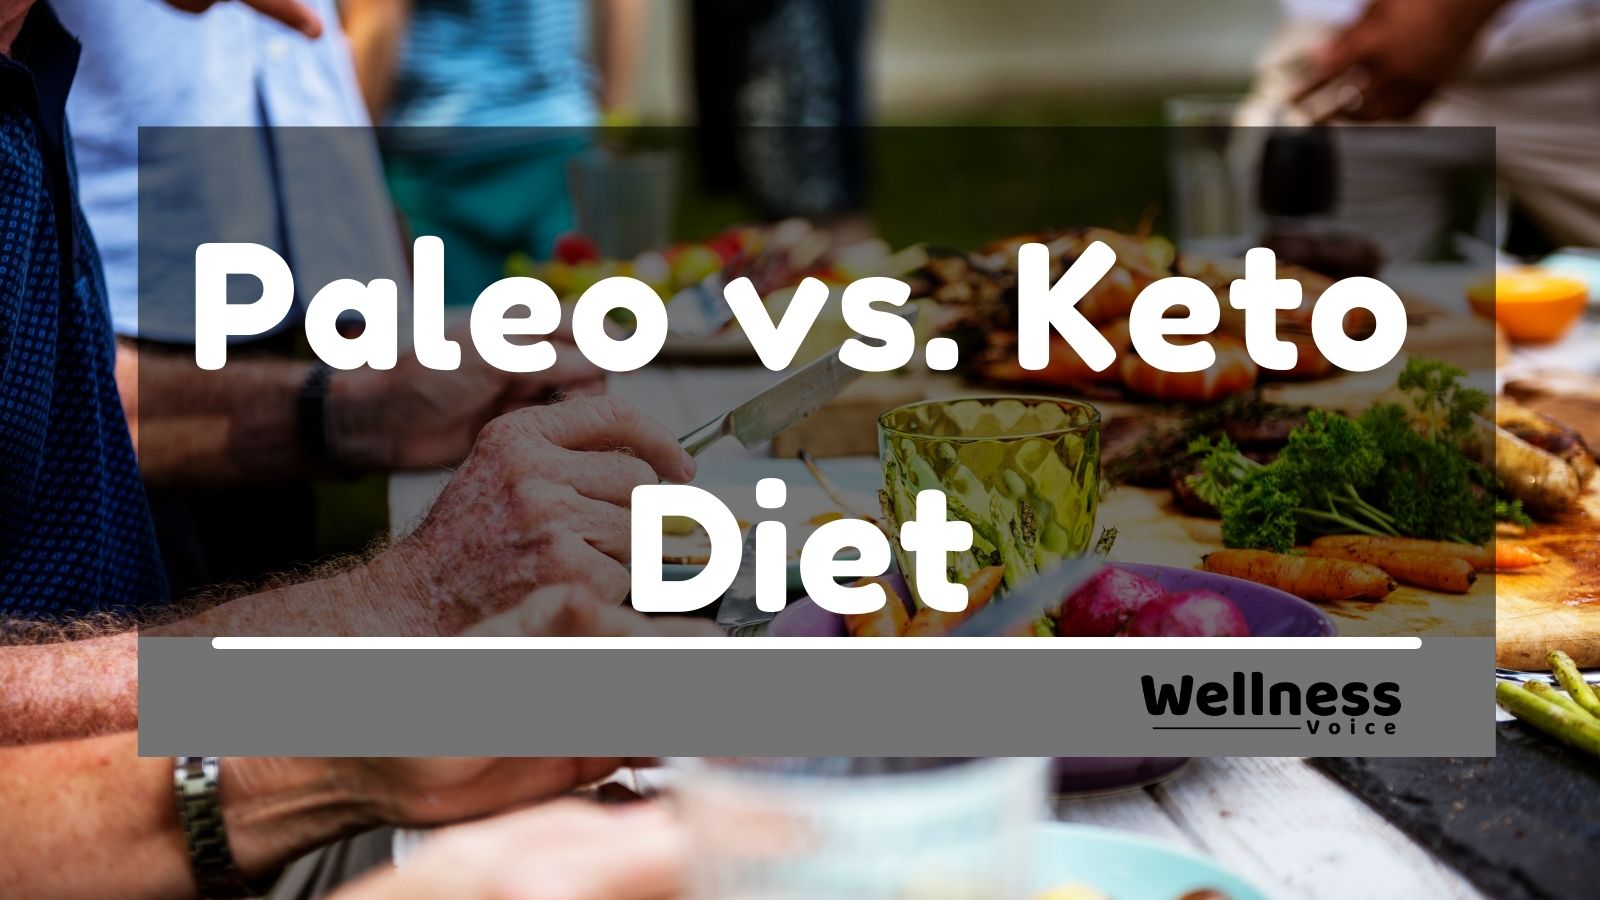 Paleo vs. Keto Diet – Which Diet Is Better?